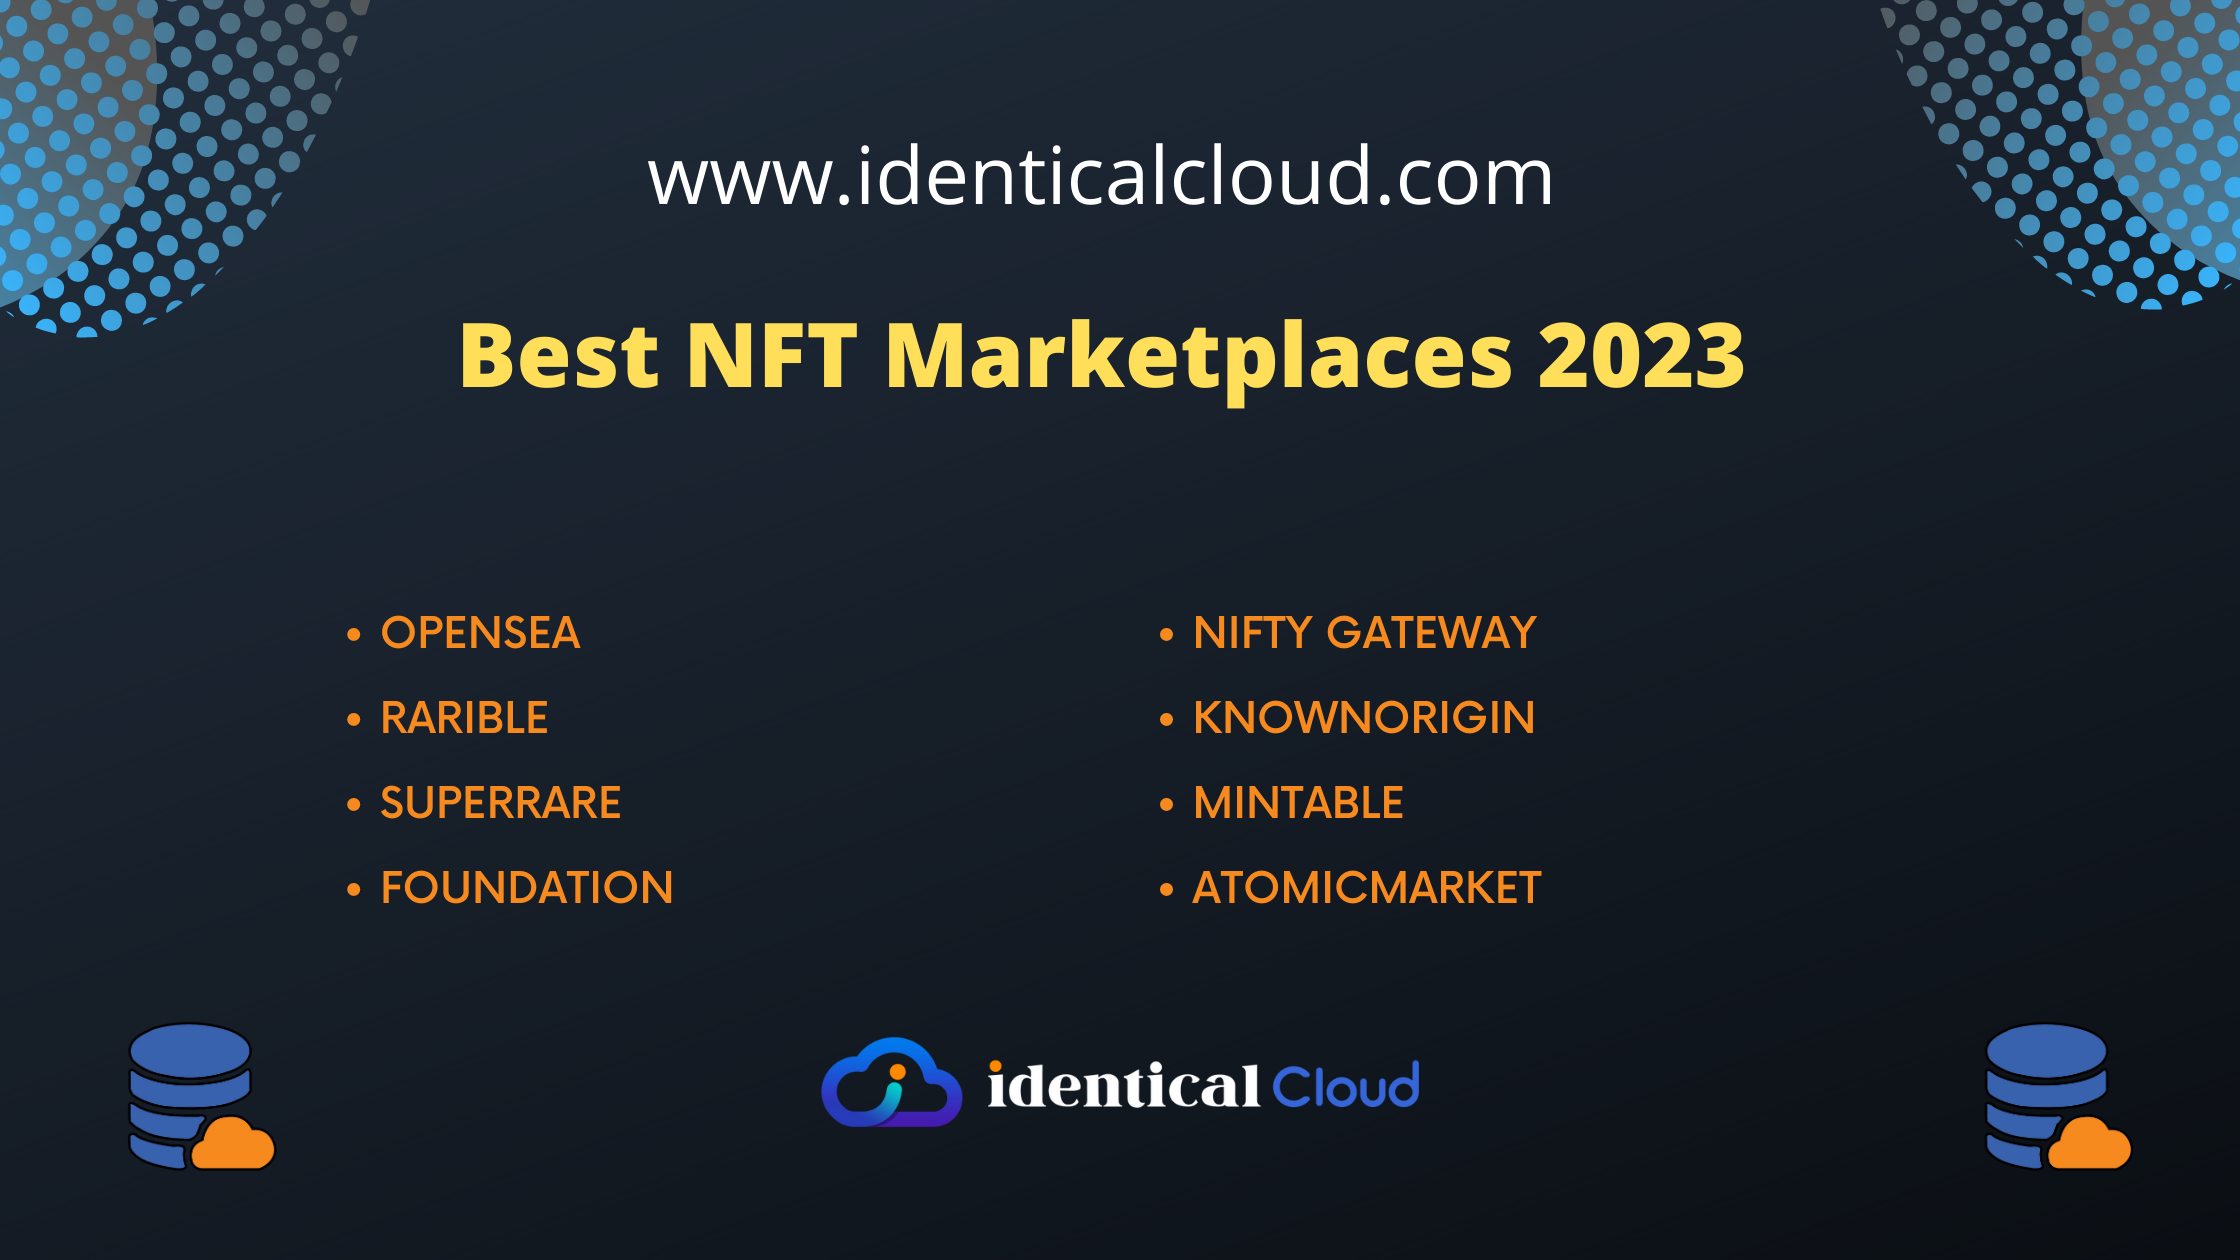 Best NFT Marketplaces 2023 - identicalcloud.com